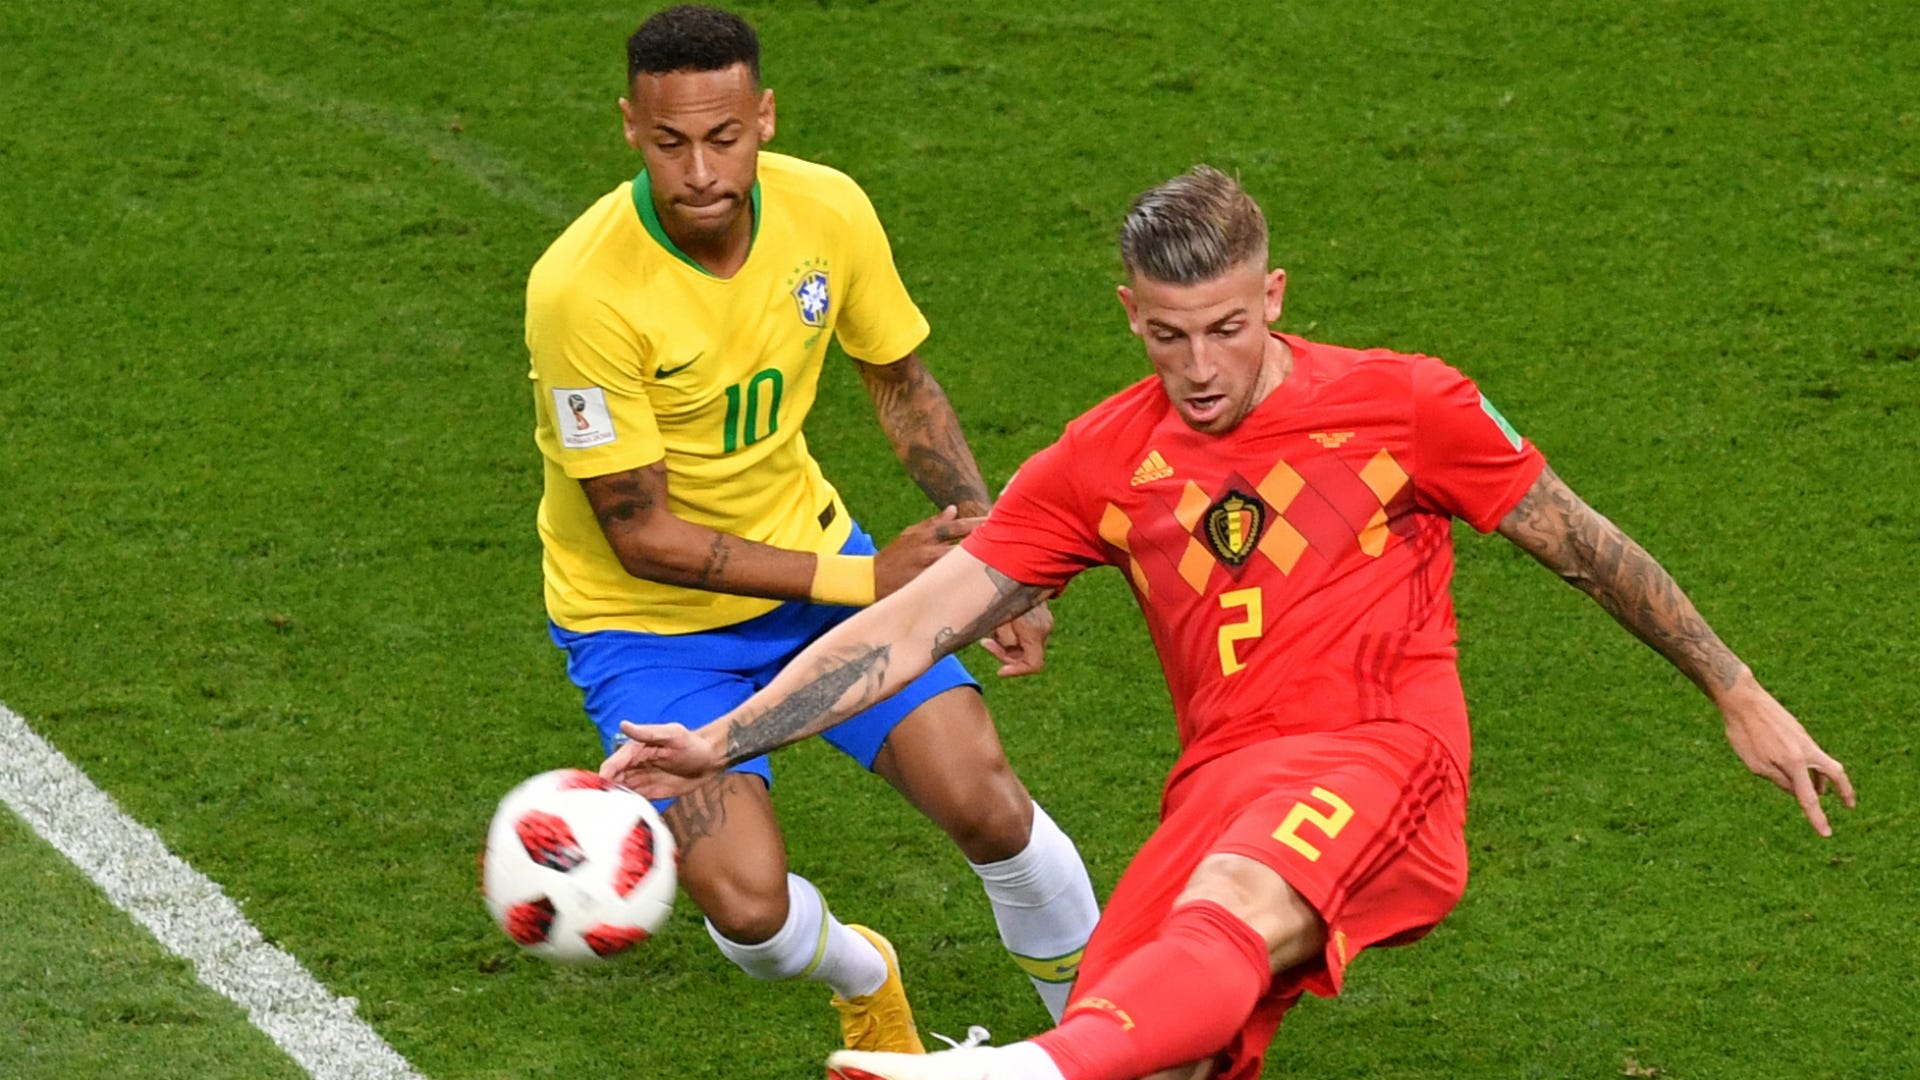 Copa do Mundo 2018: Foi pior que o 7 a 1, diz Paulinho sobre eliminação  do Brasil para Bélgica